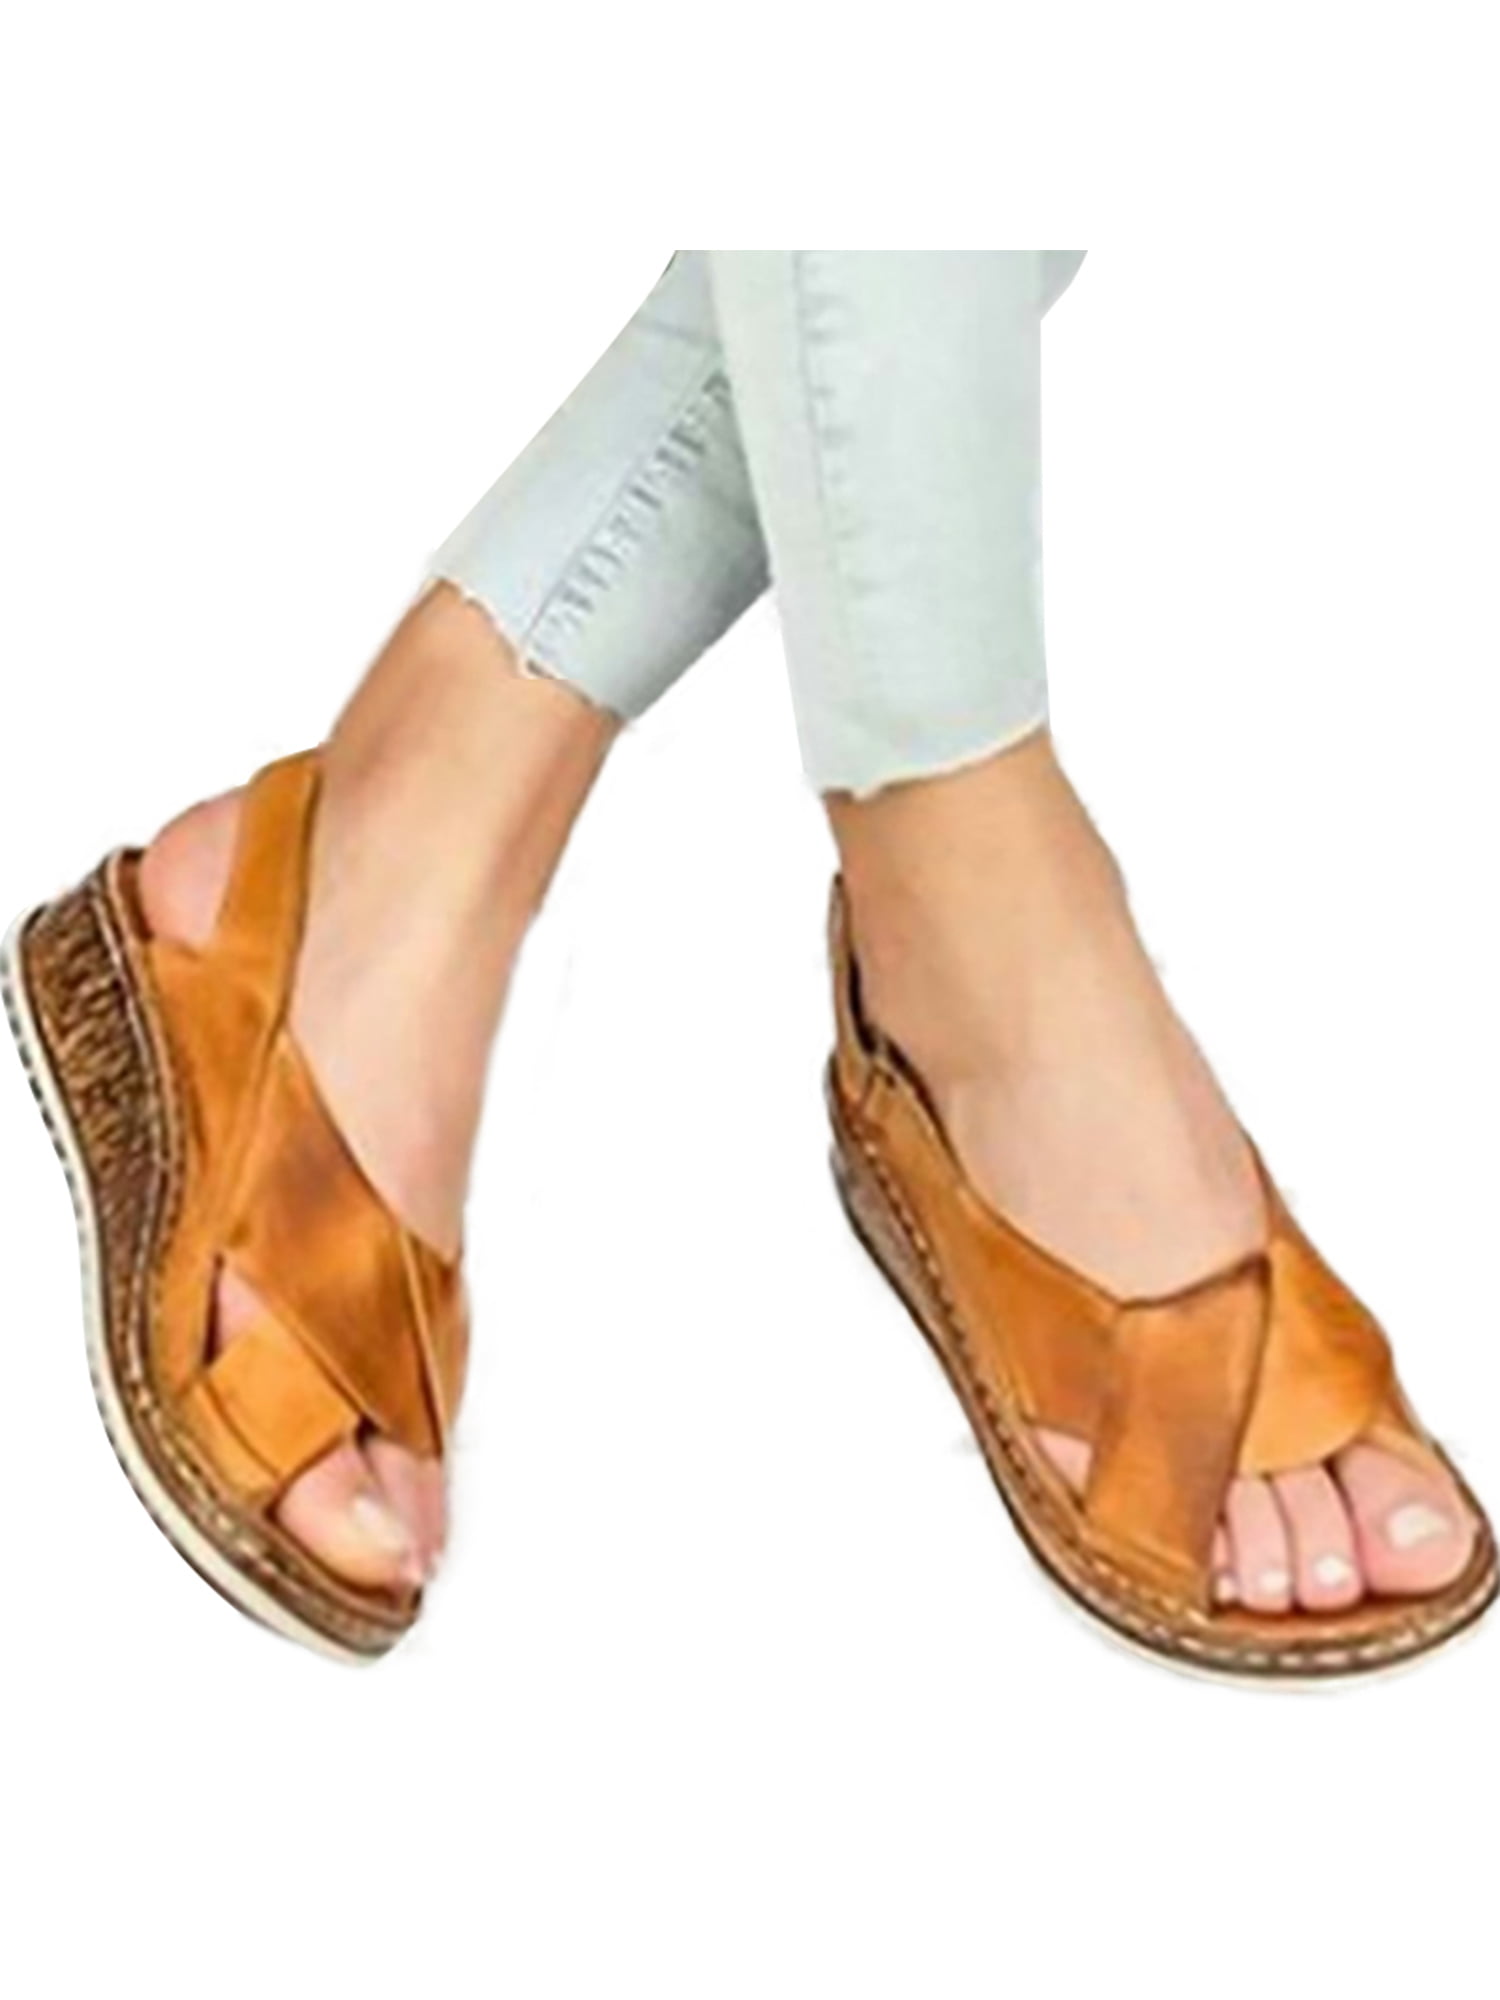 soft sole women's sandals